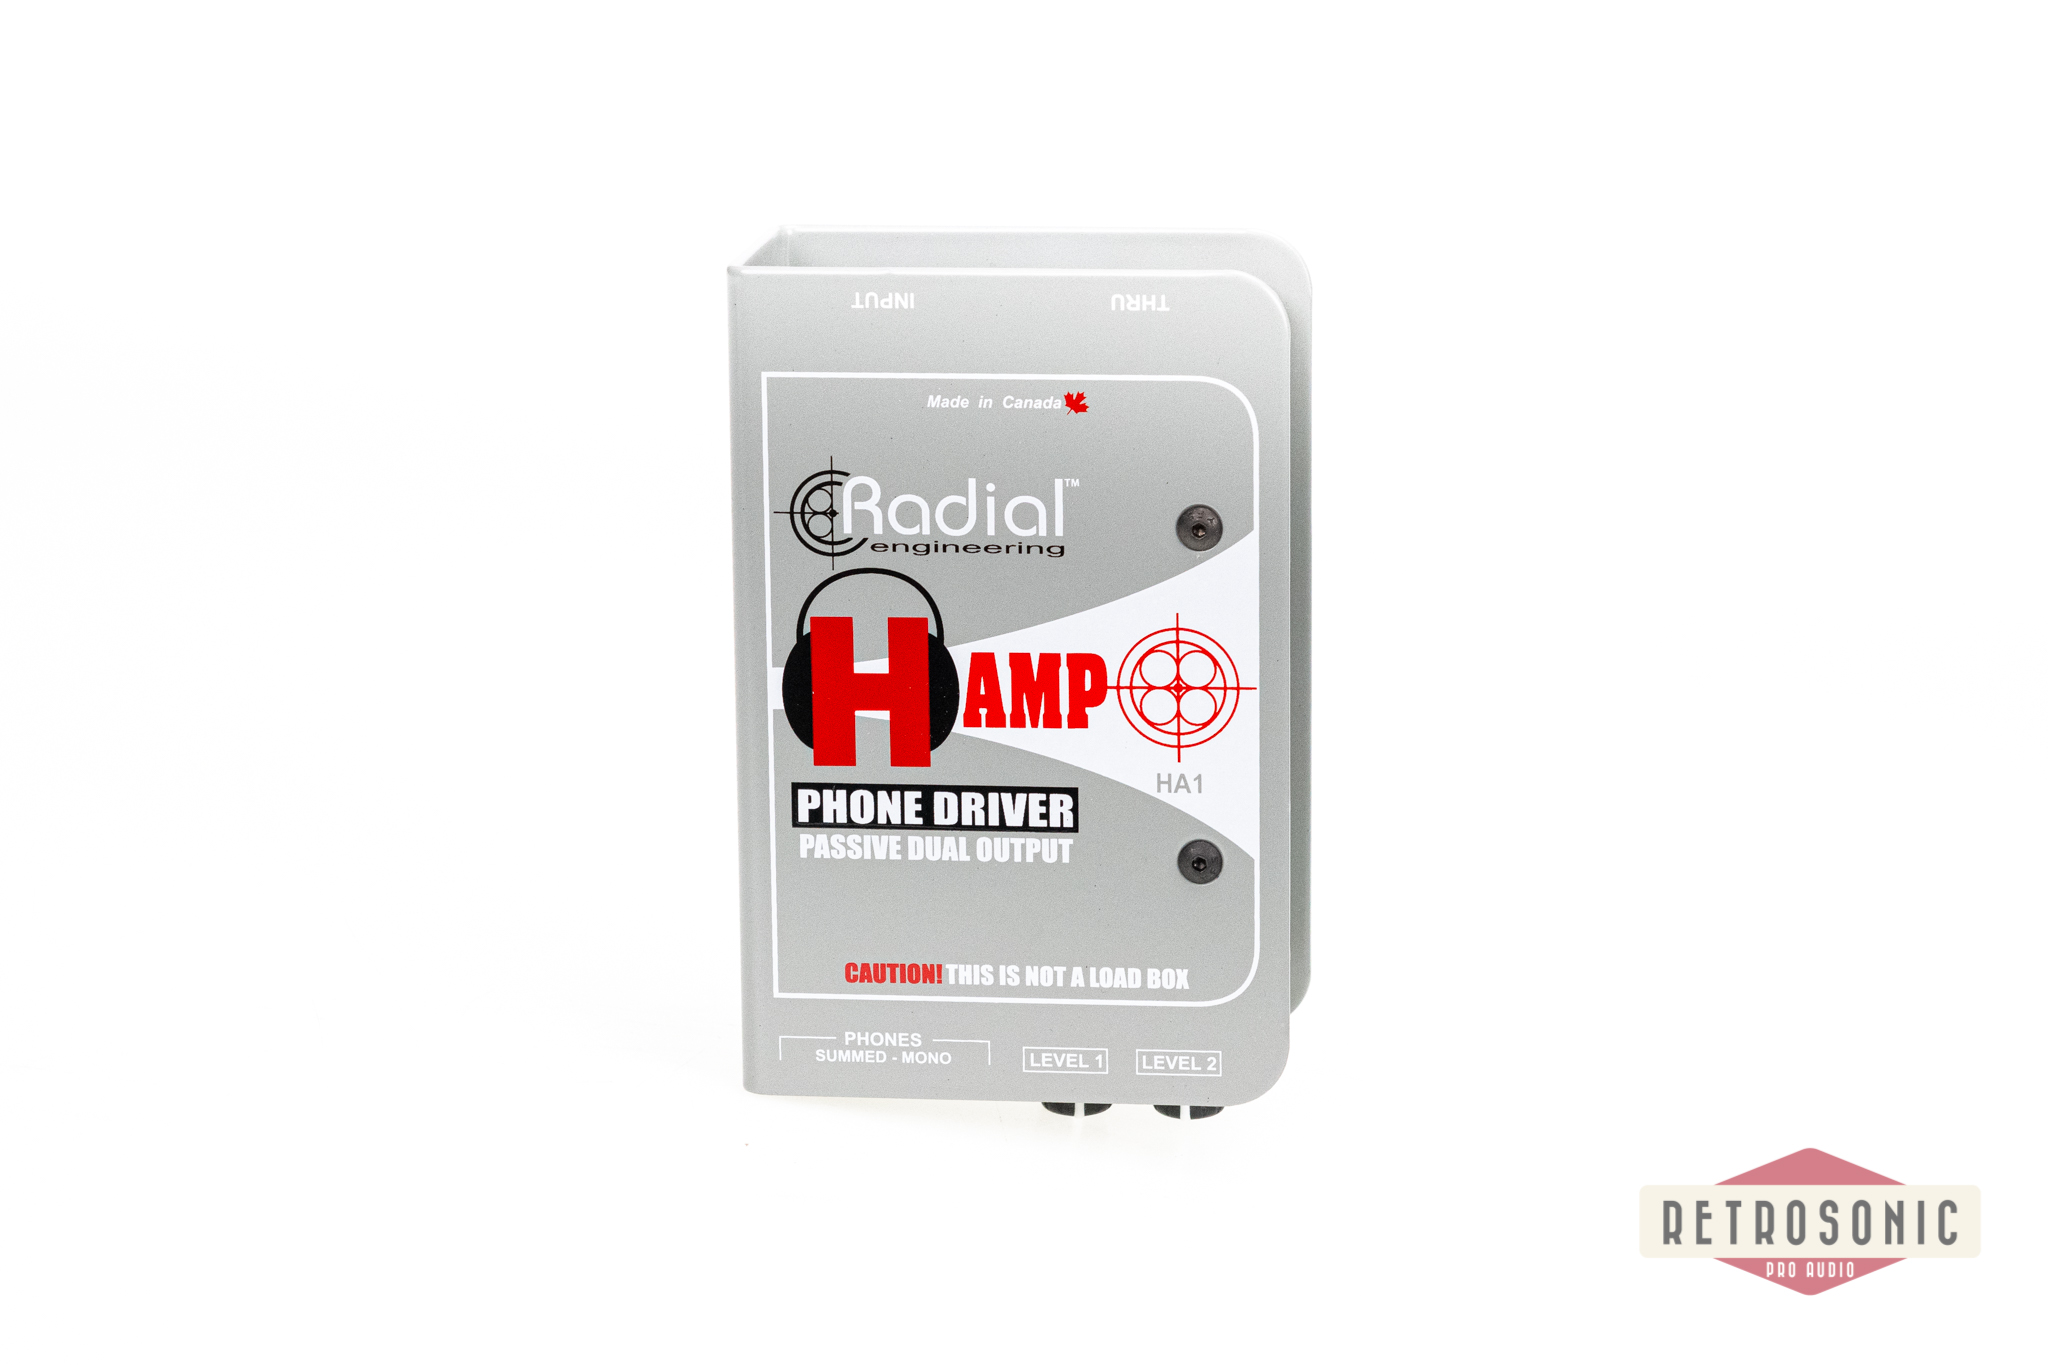 Radial H-AMP Phone Driver